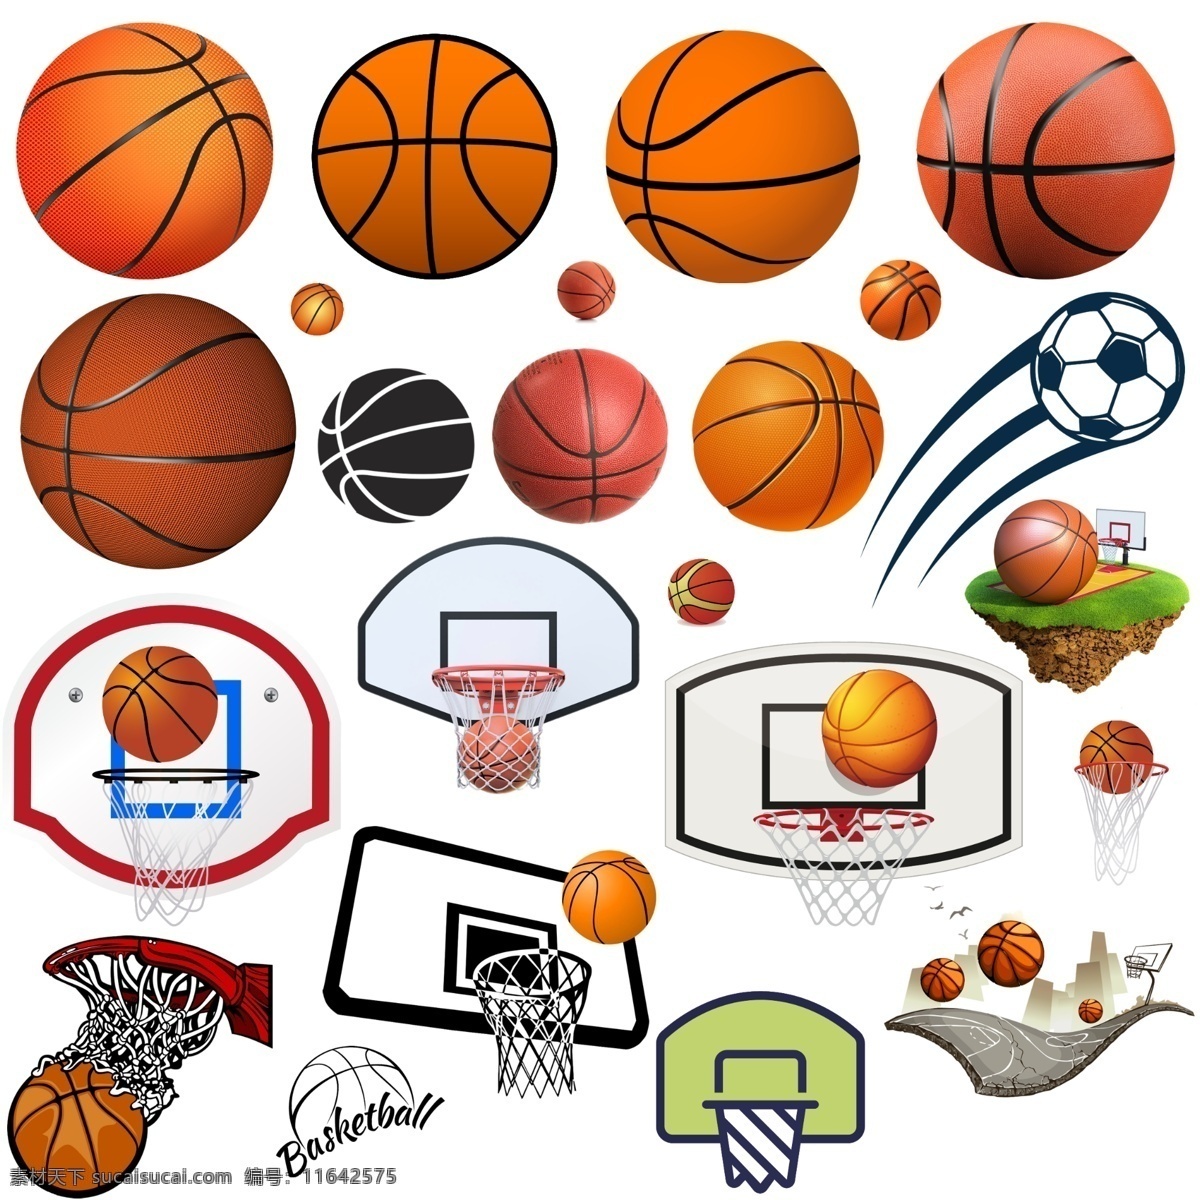 篮球素材 篮球 矢量图篮球 篮球图标 篮球标志 篮球logo 投篮 体育 篮球框 篮球架 体坛 体育明星 体育运动 篮球场 卡通篮球 漫画篮球 分层